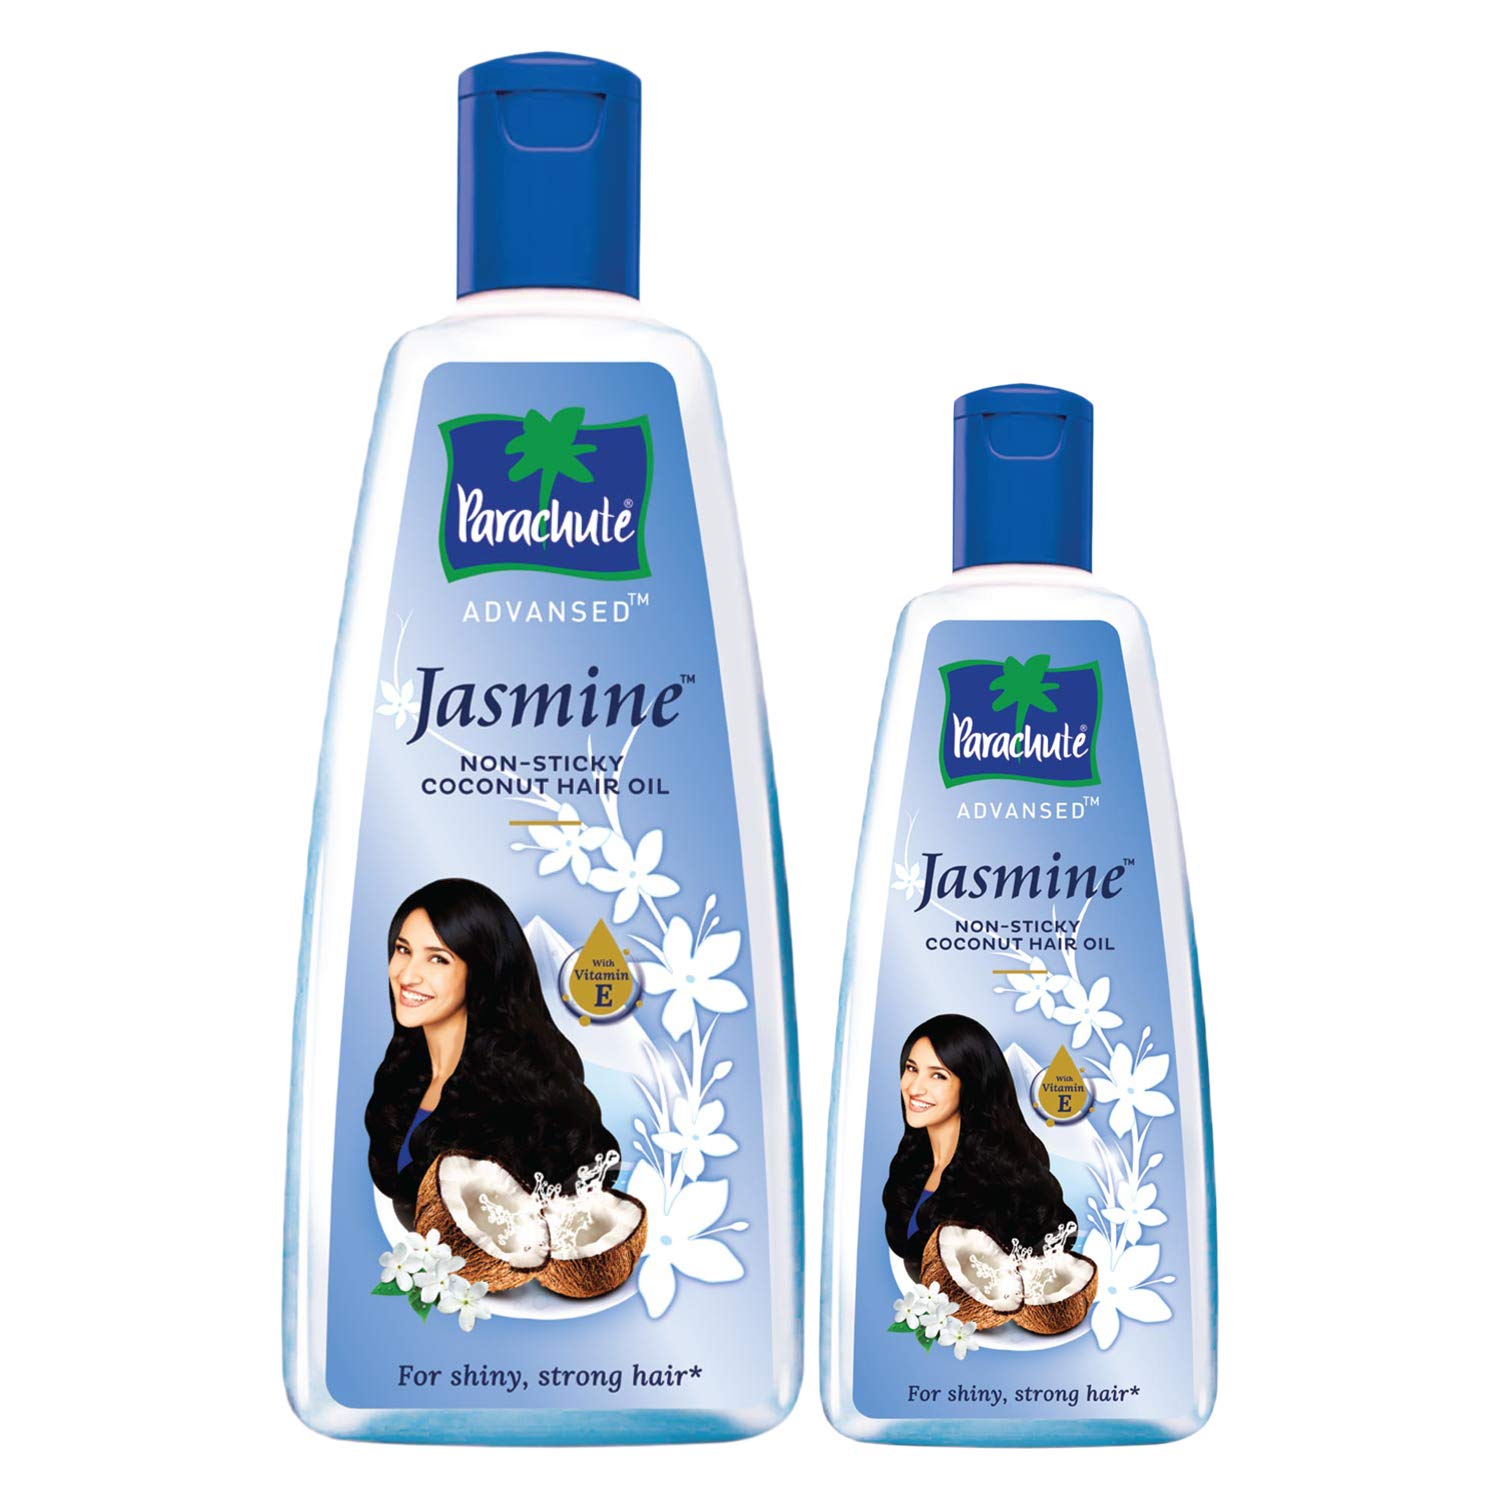 Parachute Advansed Jasmine, Coconut Hair Oil